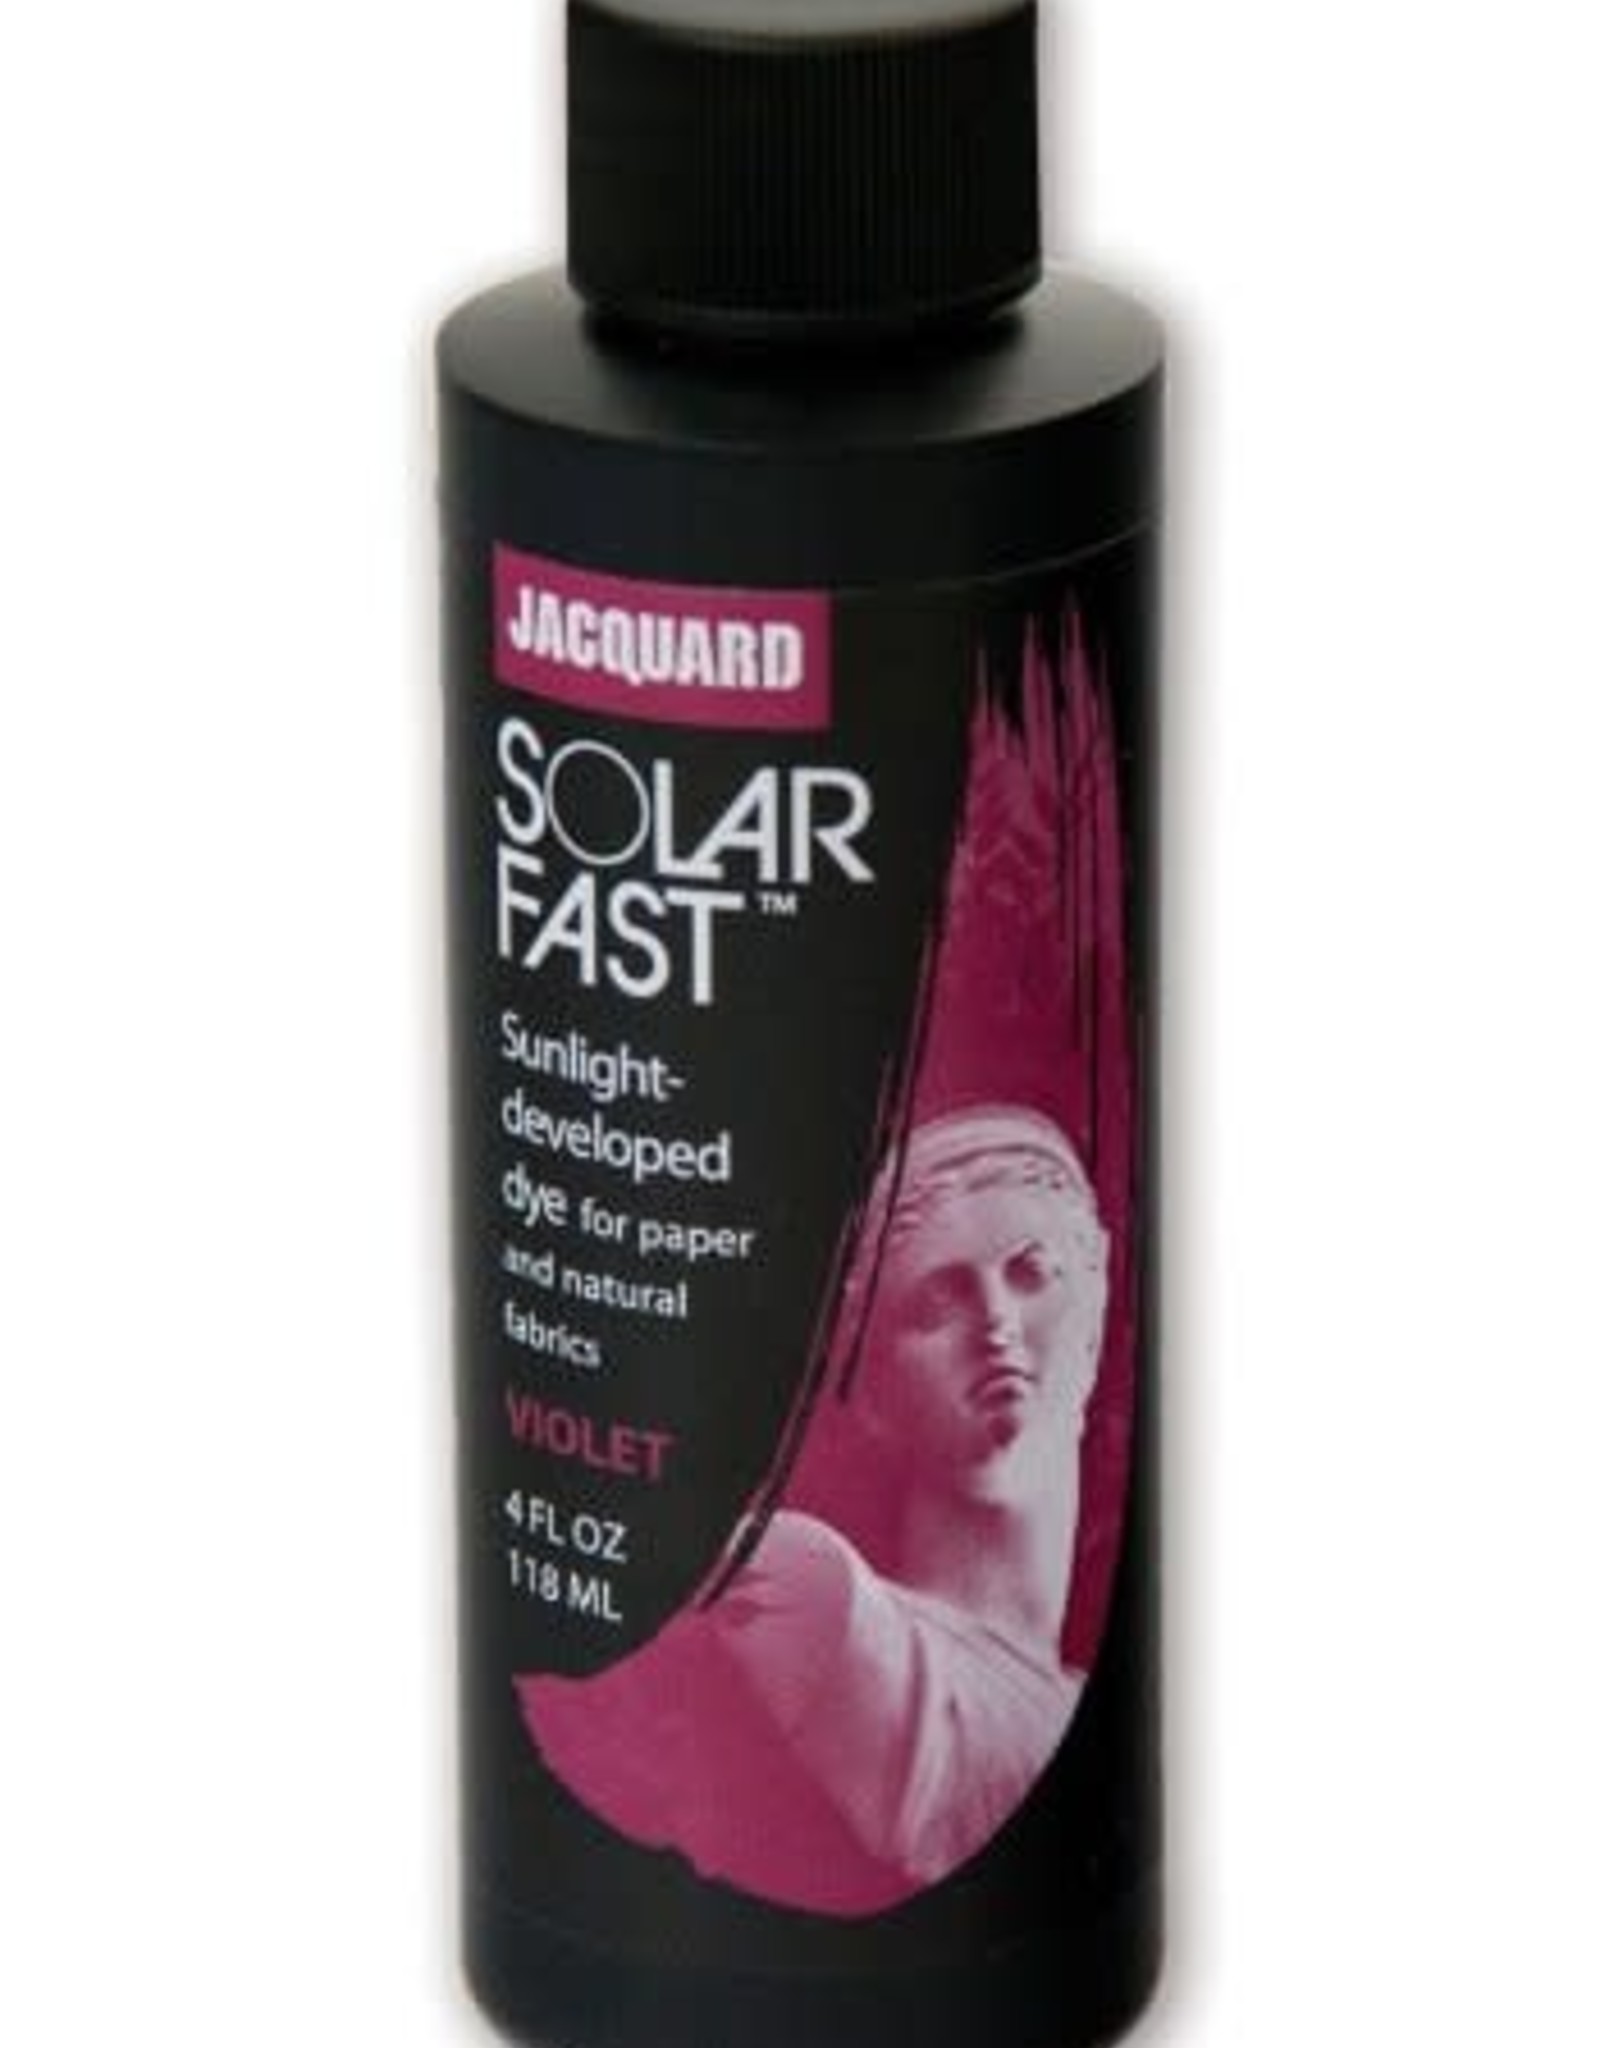 Jacquard SolarFast is verf die zich in de zon ontwikkelt!